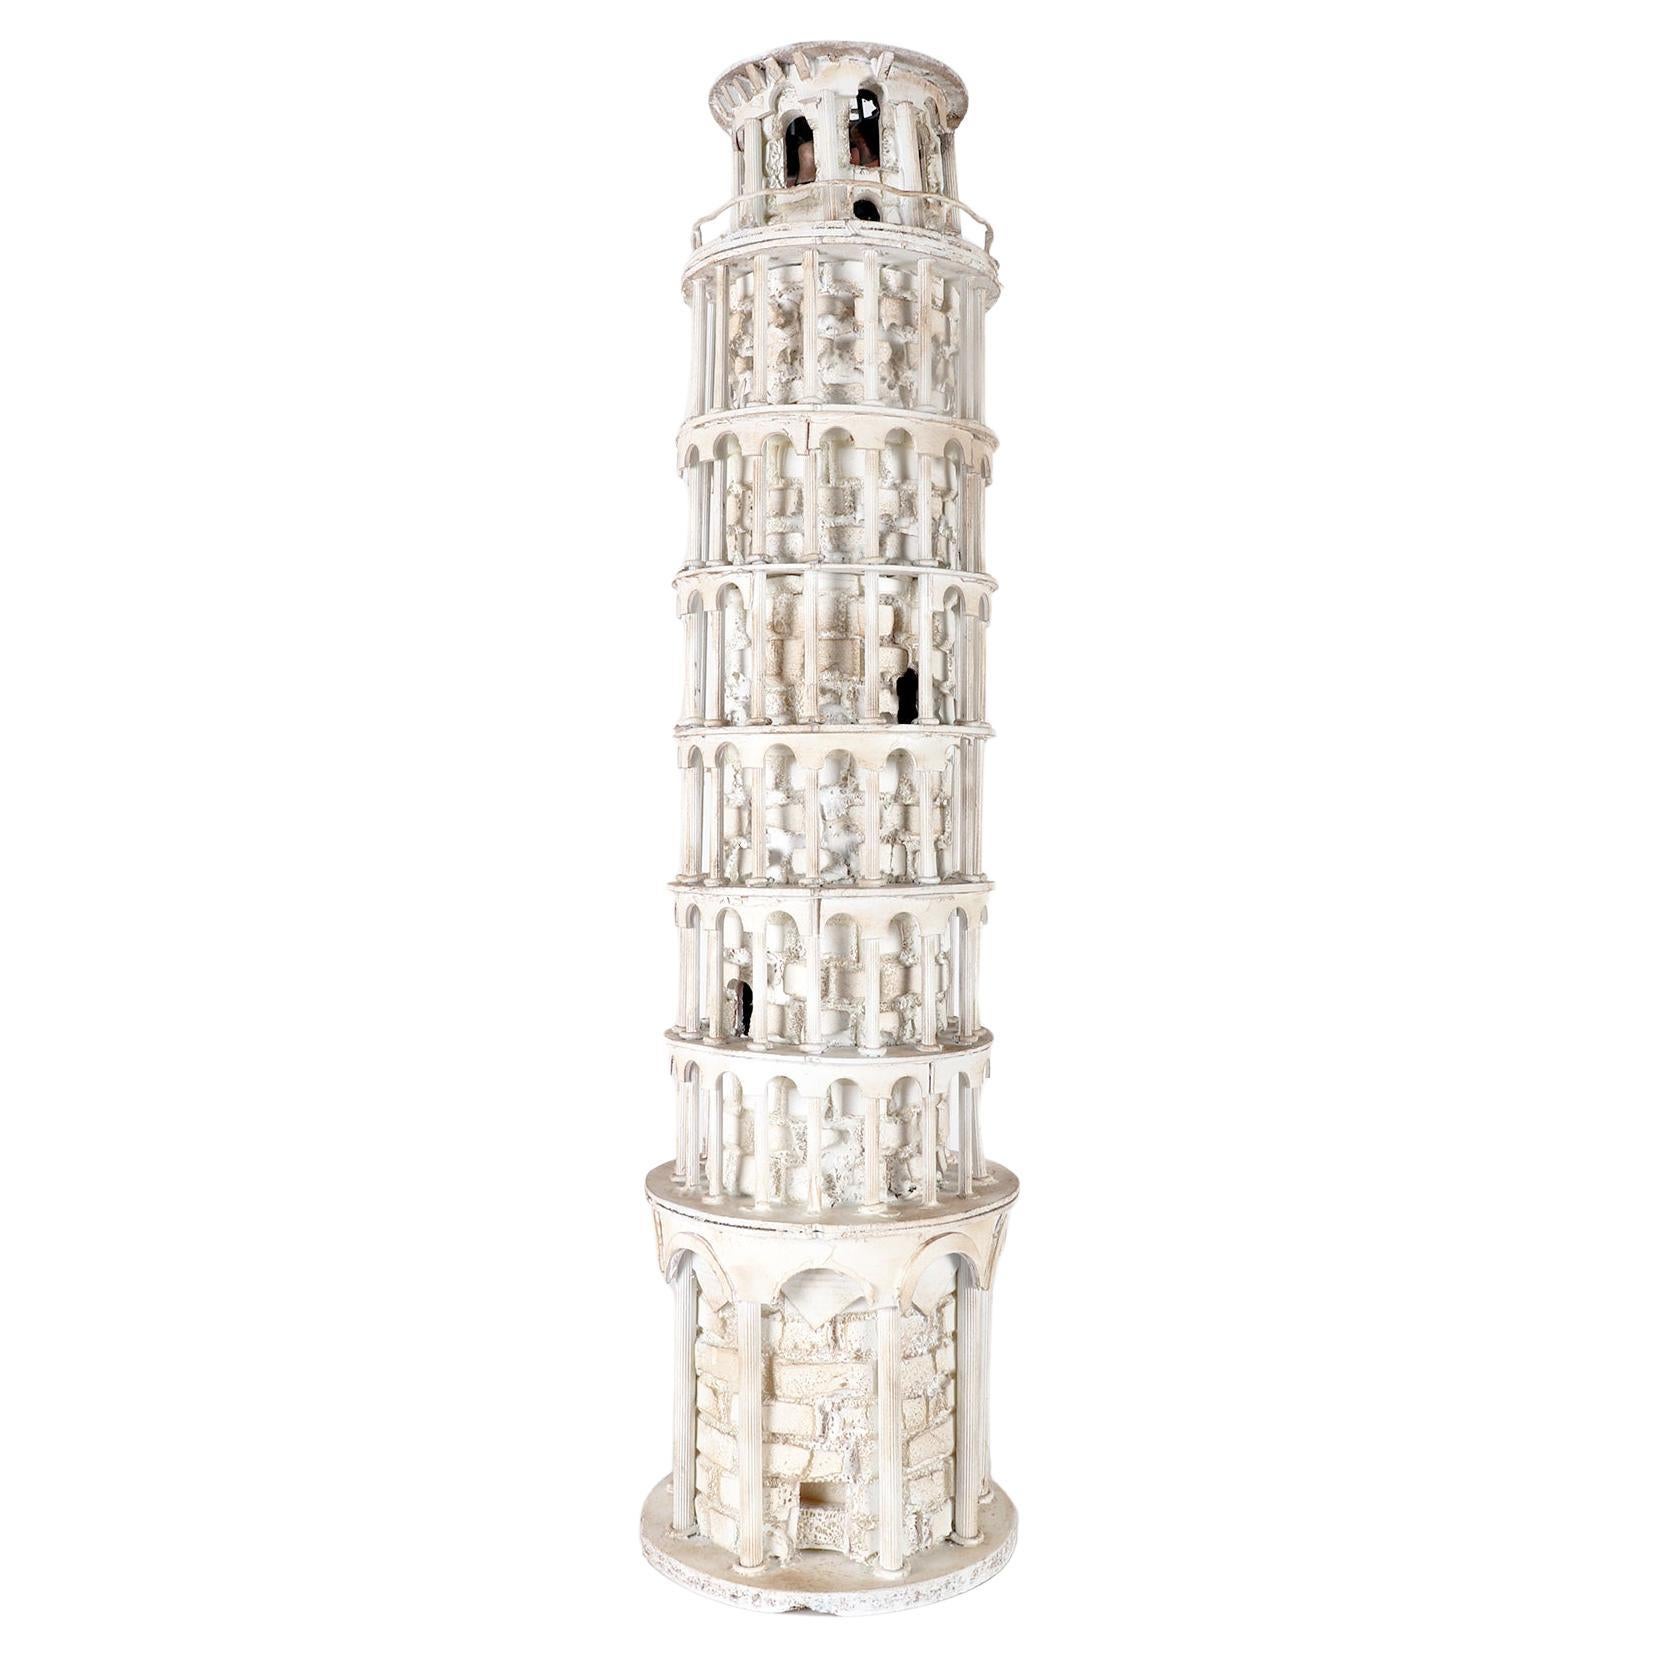 Eine hölzerne Maquette der Grand Tour, die den Turm von Pisa darstellt, Italien 1950.